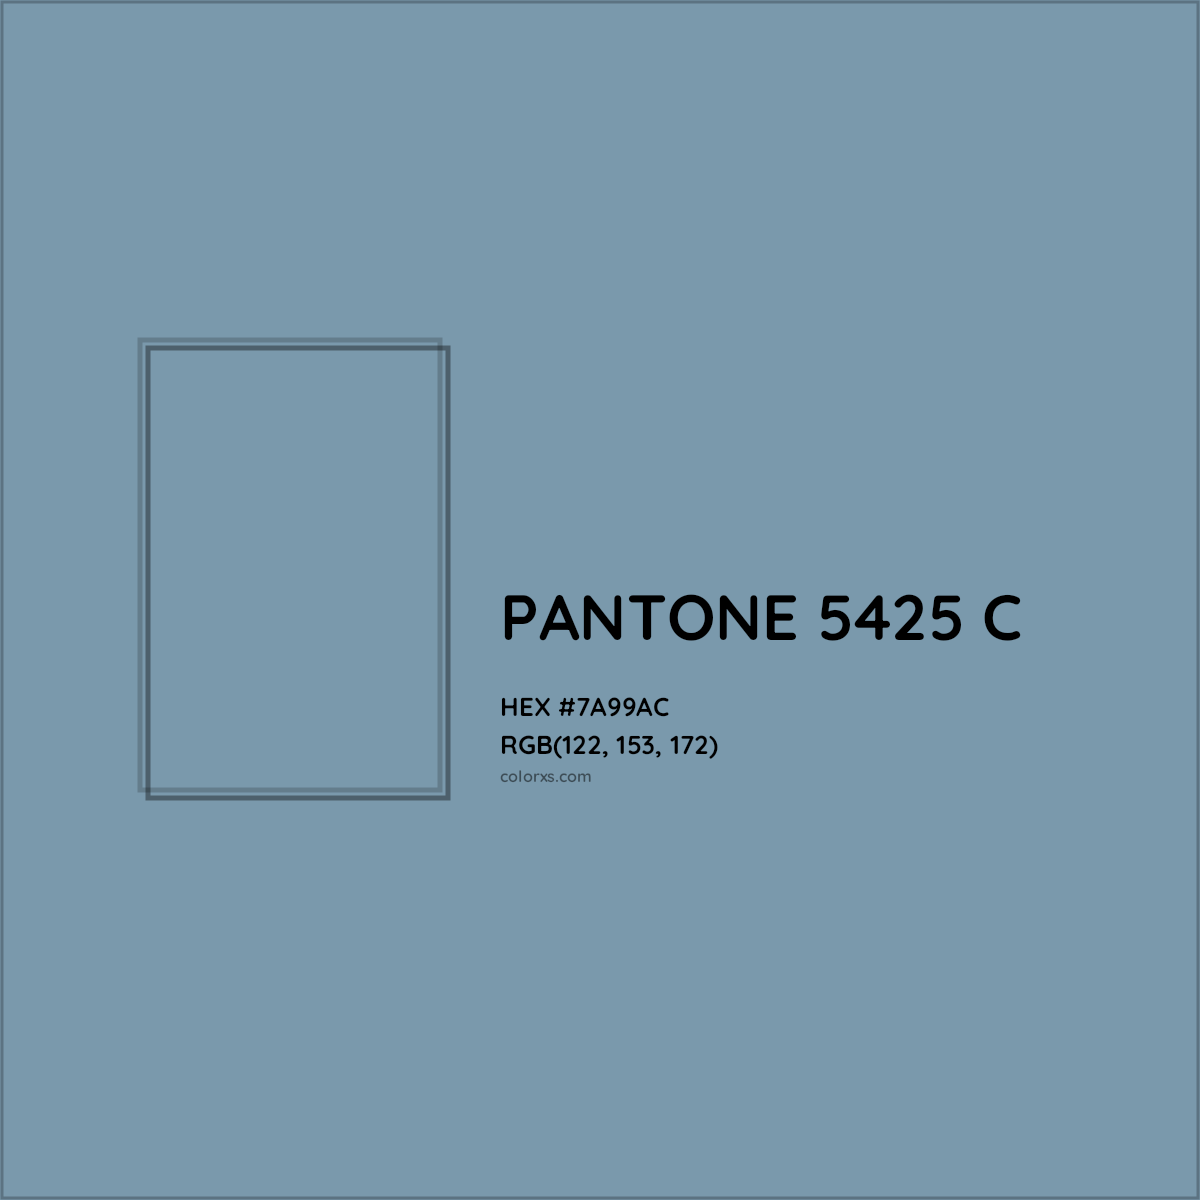 HEX #7A99AC PANTONE 5425 C CMS Pantone PMS - Color Code